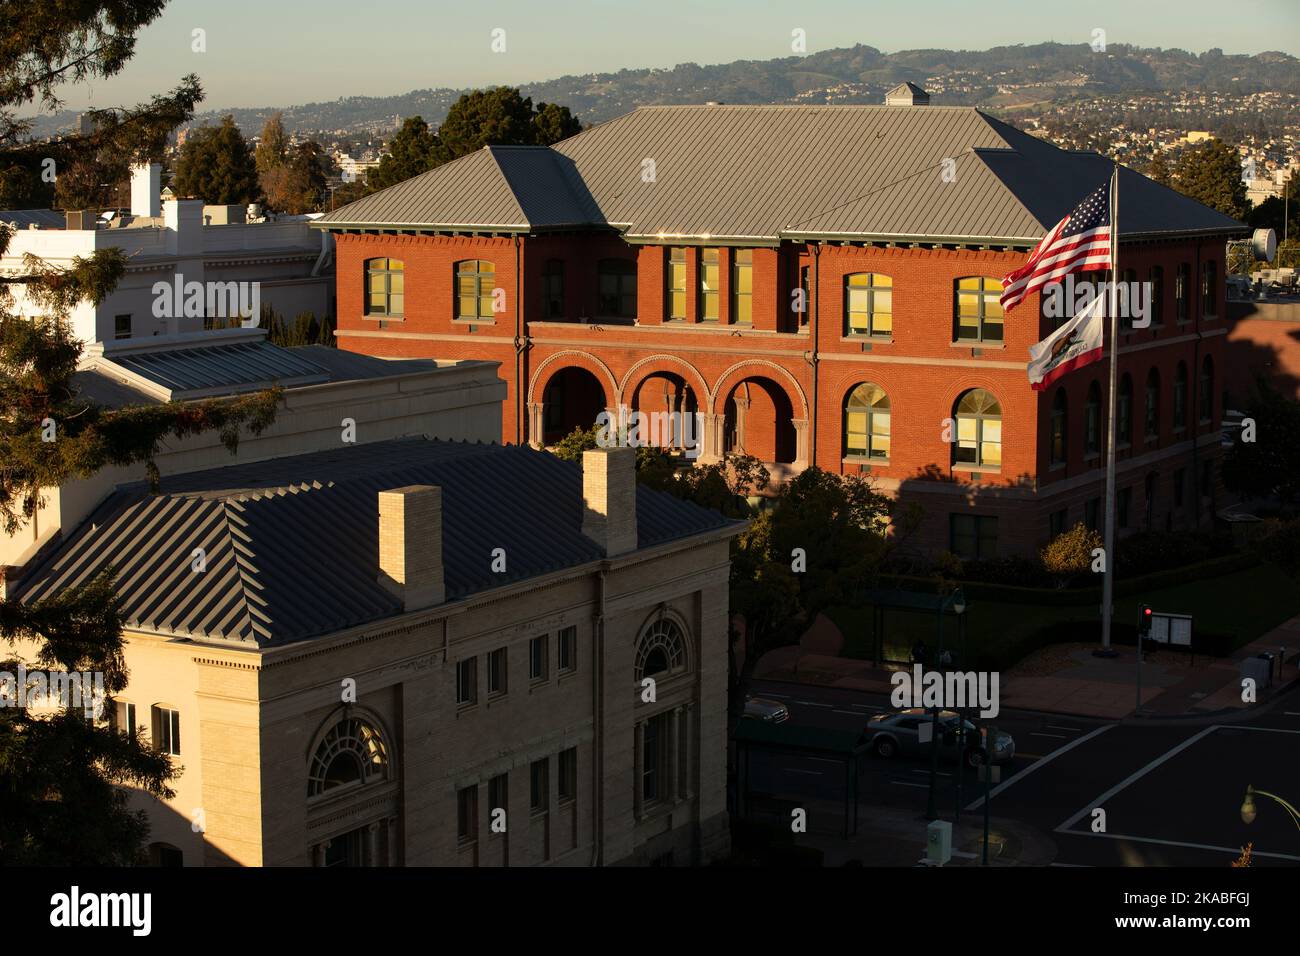 Am späten Nachmittag scheint die Sonne auf der historischen Bay Area City in der Innenstadt von Alameda, Kalifornien, USA. Stockfoto